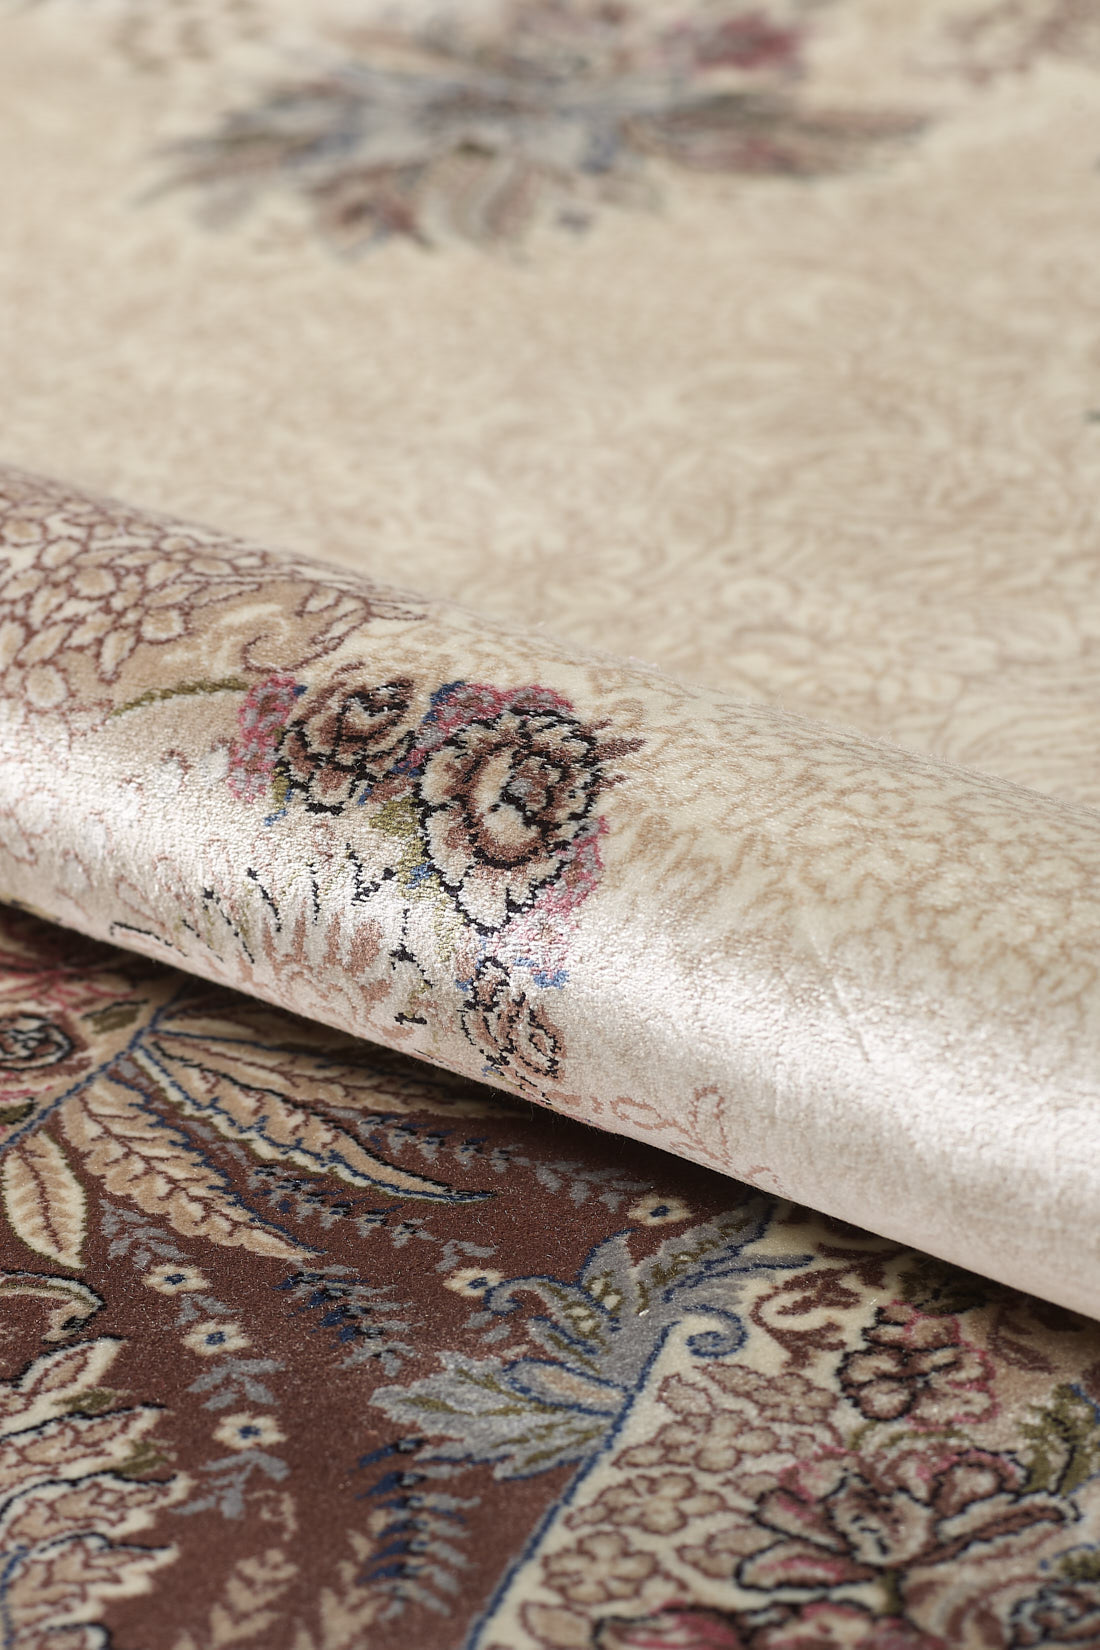 Old World Floral Türkischer Teppich – Taupe – 2219D 